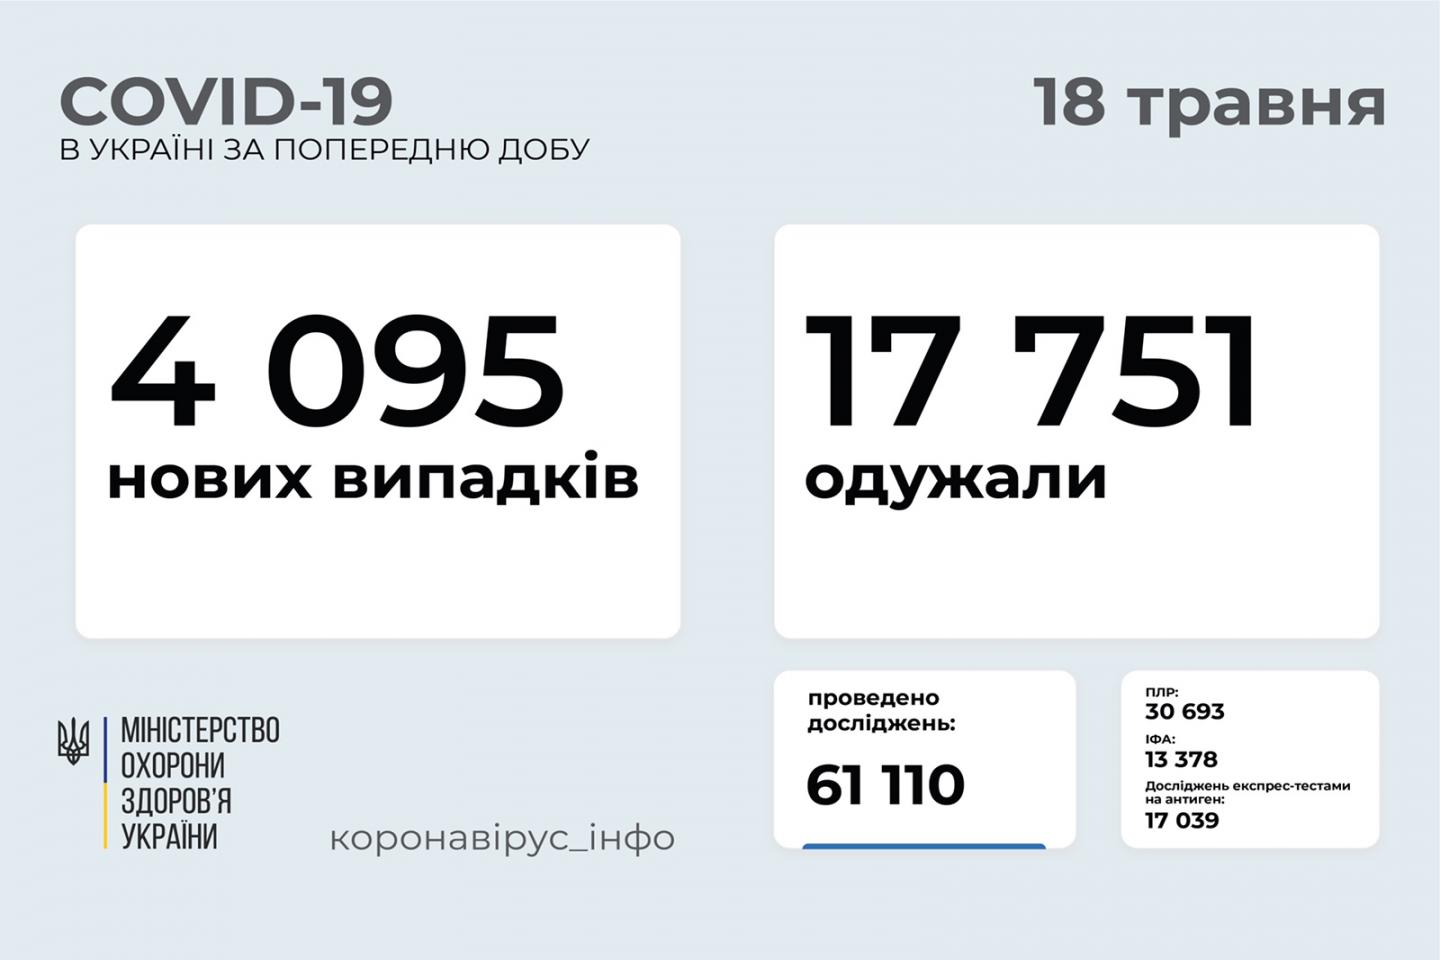 http://dunrada.gov.ua/uploadfile/archive_news/2021/05/18/2021-05-18_1559/images/images-8353.jpg